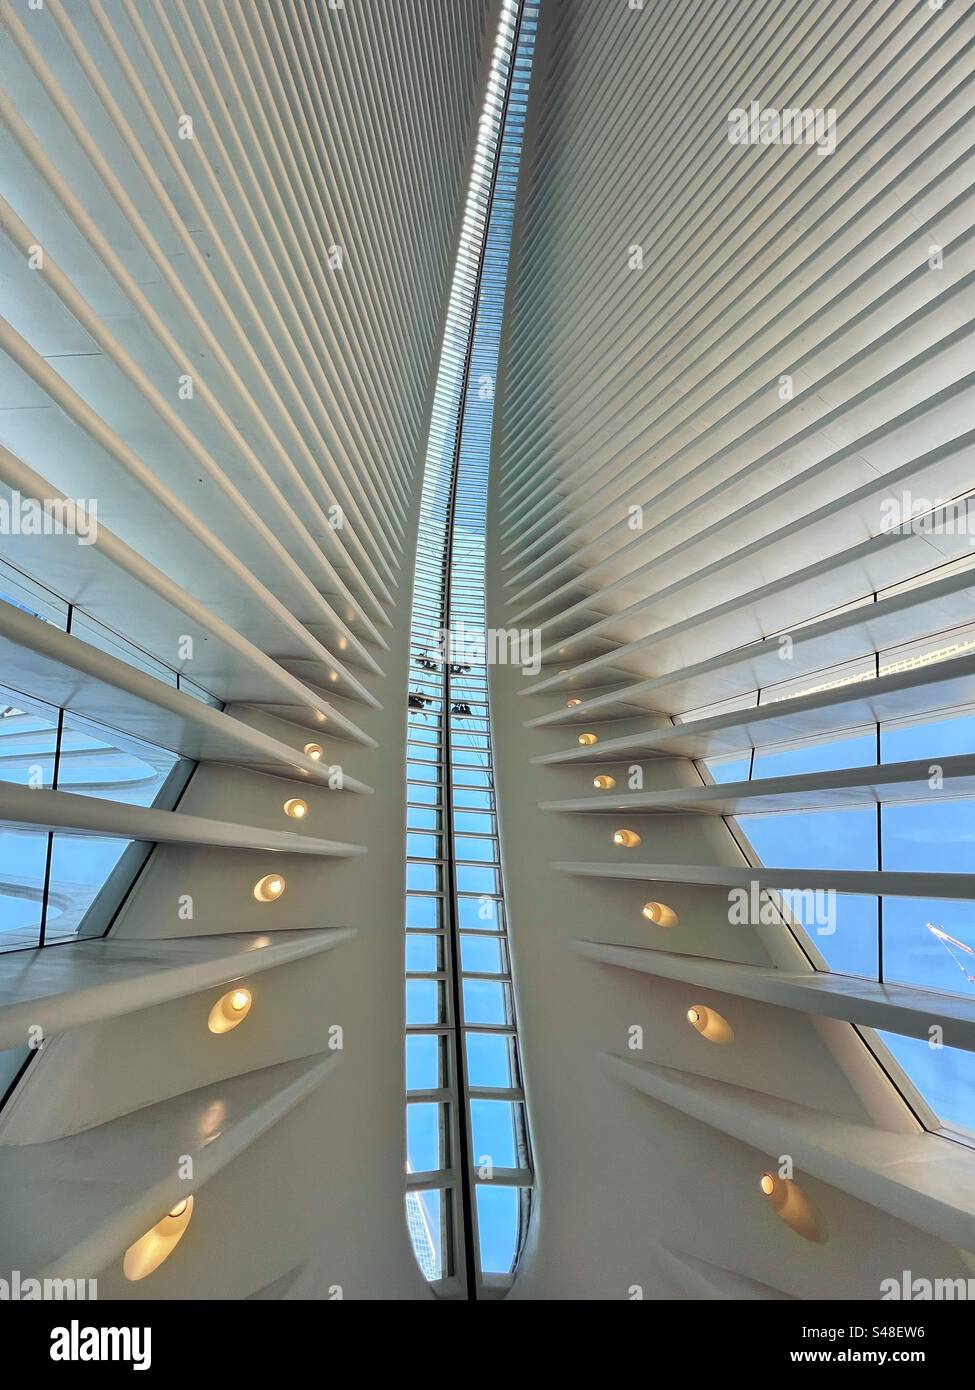 Toit du bâtiment Oculus à New York avec des entrepreneurs travaillant sur le toit en verre. Il fait partie du complexe World Trade Center et de la gare terminale du réseau ferroviaire PATH. Banque D'Images